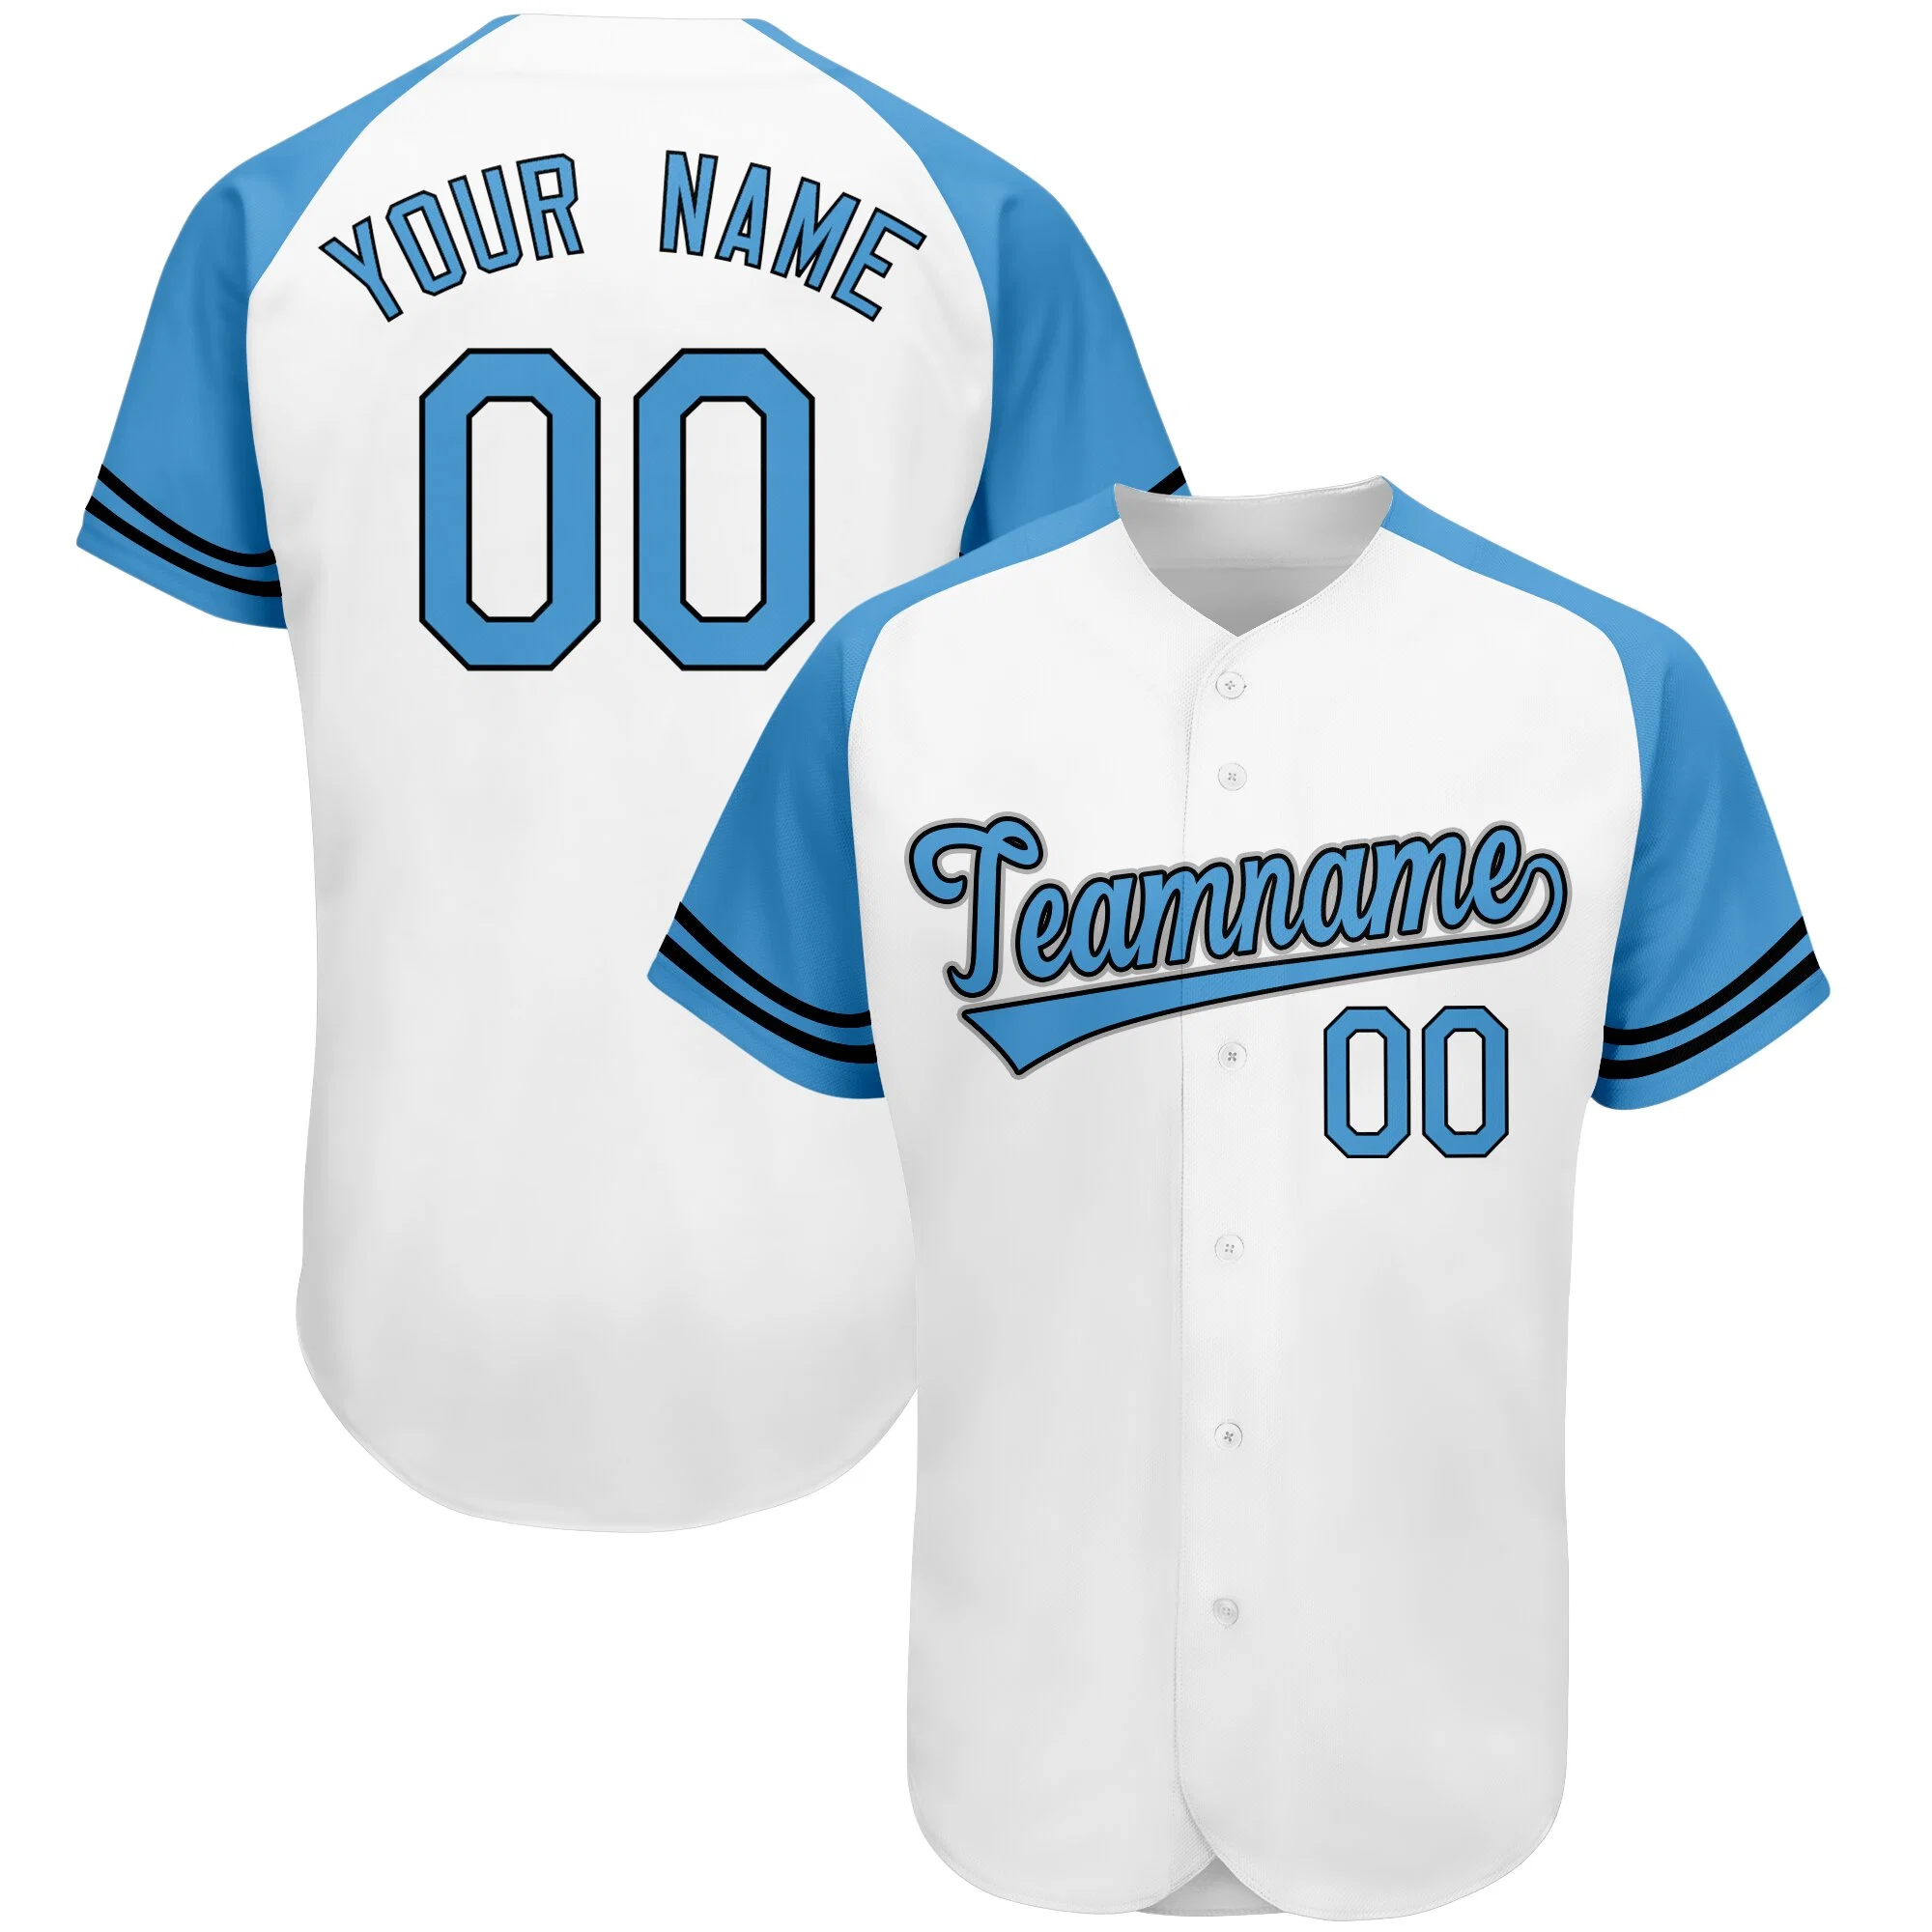 Camisa de Baseball branca personalizada impresso o nome da equipe de Baseball Jersey Camisola Street Style Hip Hop Homens